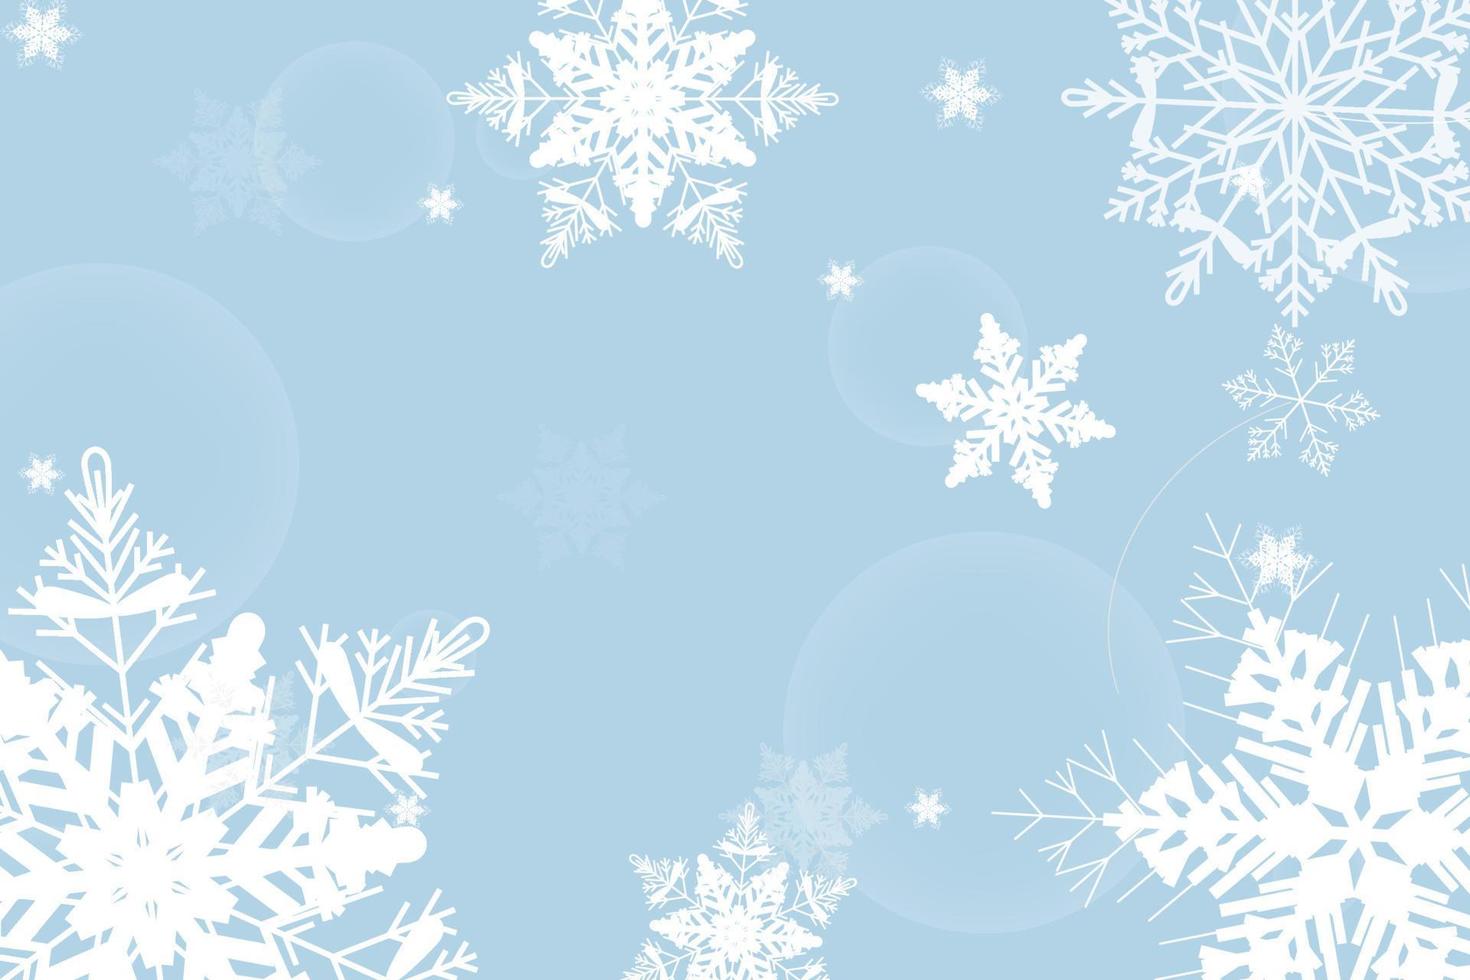 kerst winter achtergrond met sneeuwvlokken.vakantie wenskaart met sneeuwvlok background.for tekst, verkoop en meer. vector